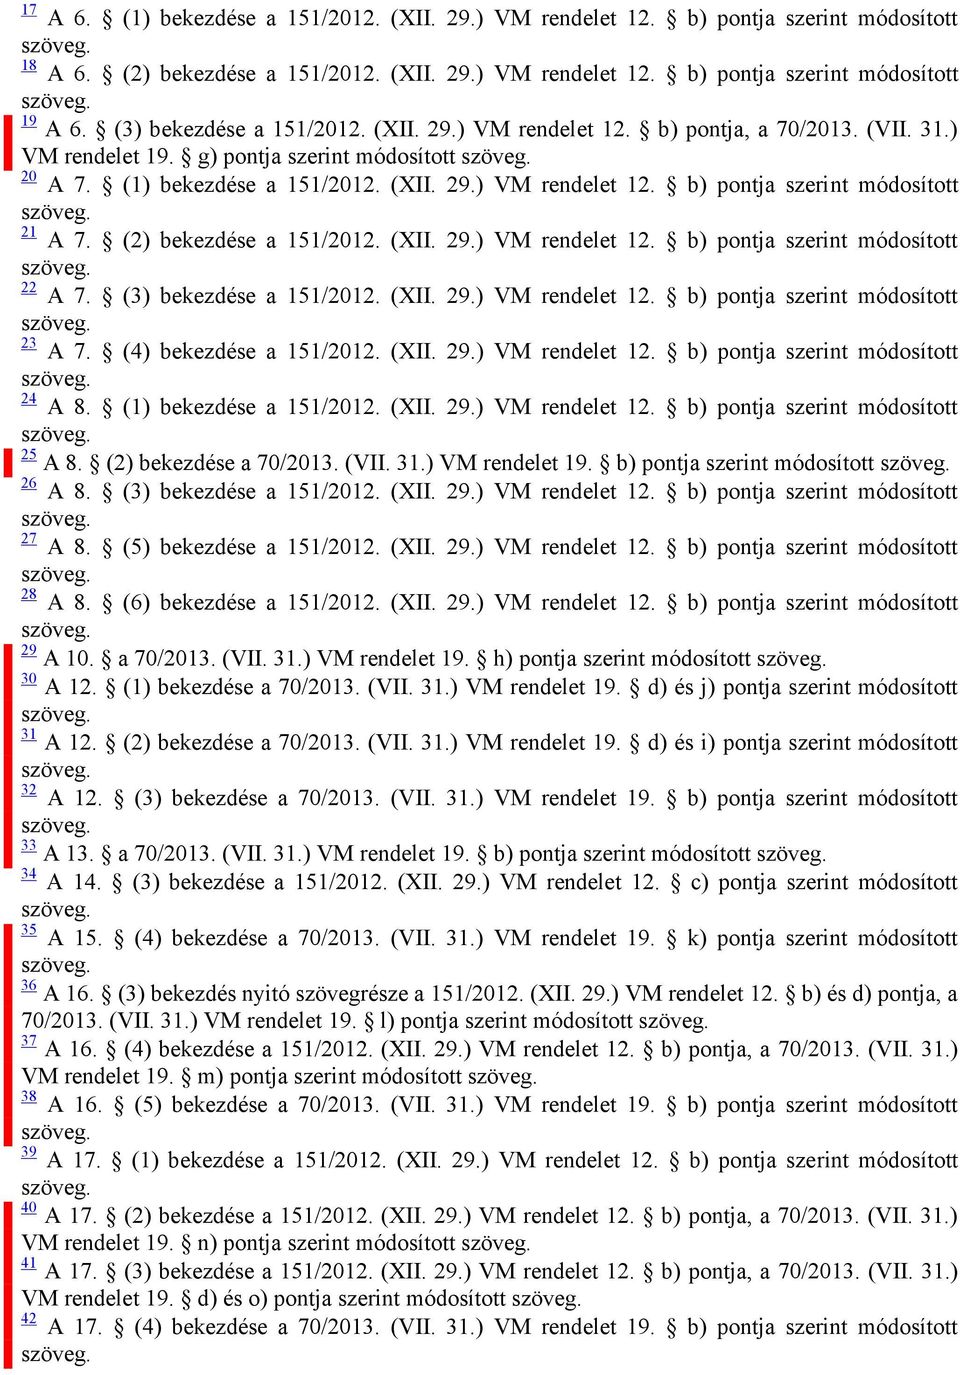 (2) bekezdése a 151/2012. (XII. 29.) VM rendelet 12. b) pontja szerint módosított 22 A 7. (3) bekezdése a 151/2012. (XII. 29.) VM rendelet 12. b) pontja szerint módosított 23 A 7.